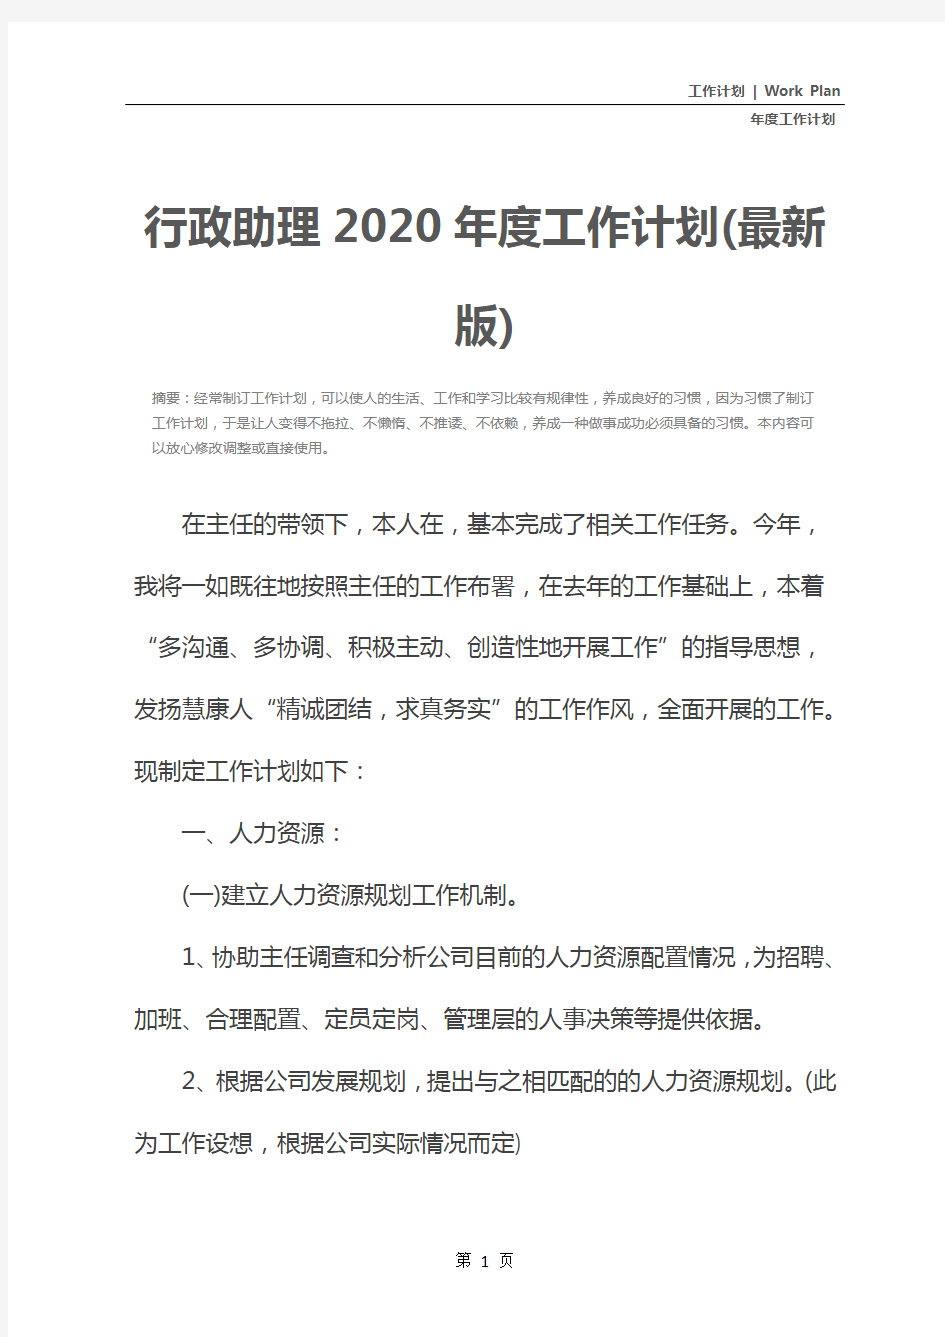 行政助理2020年度工作计划(最新版)